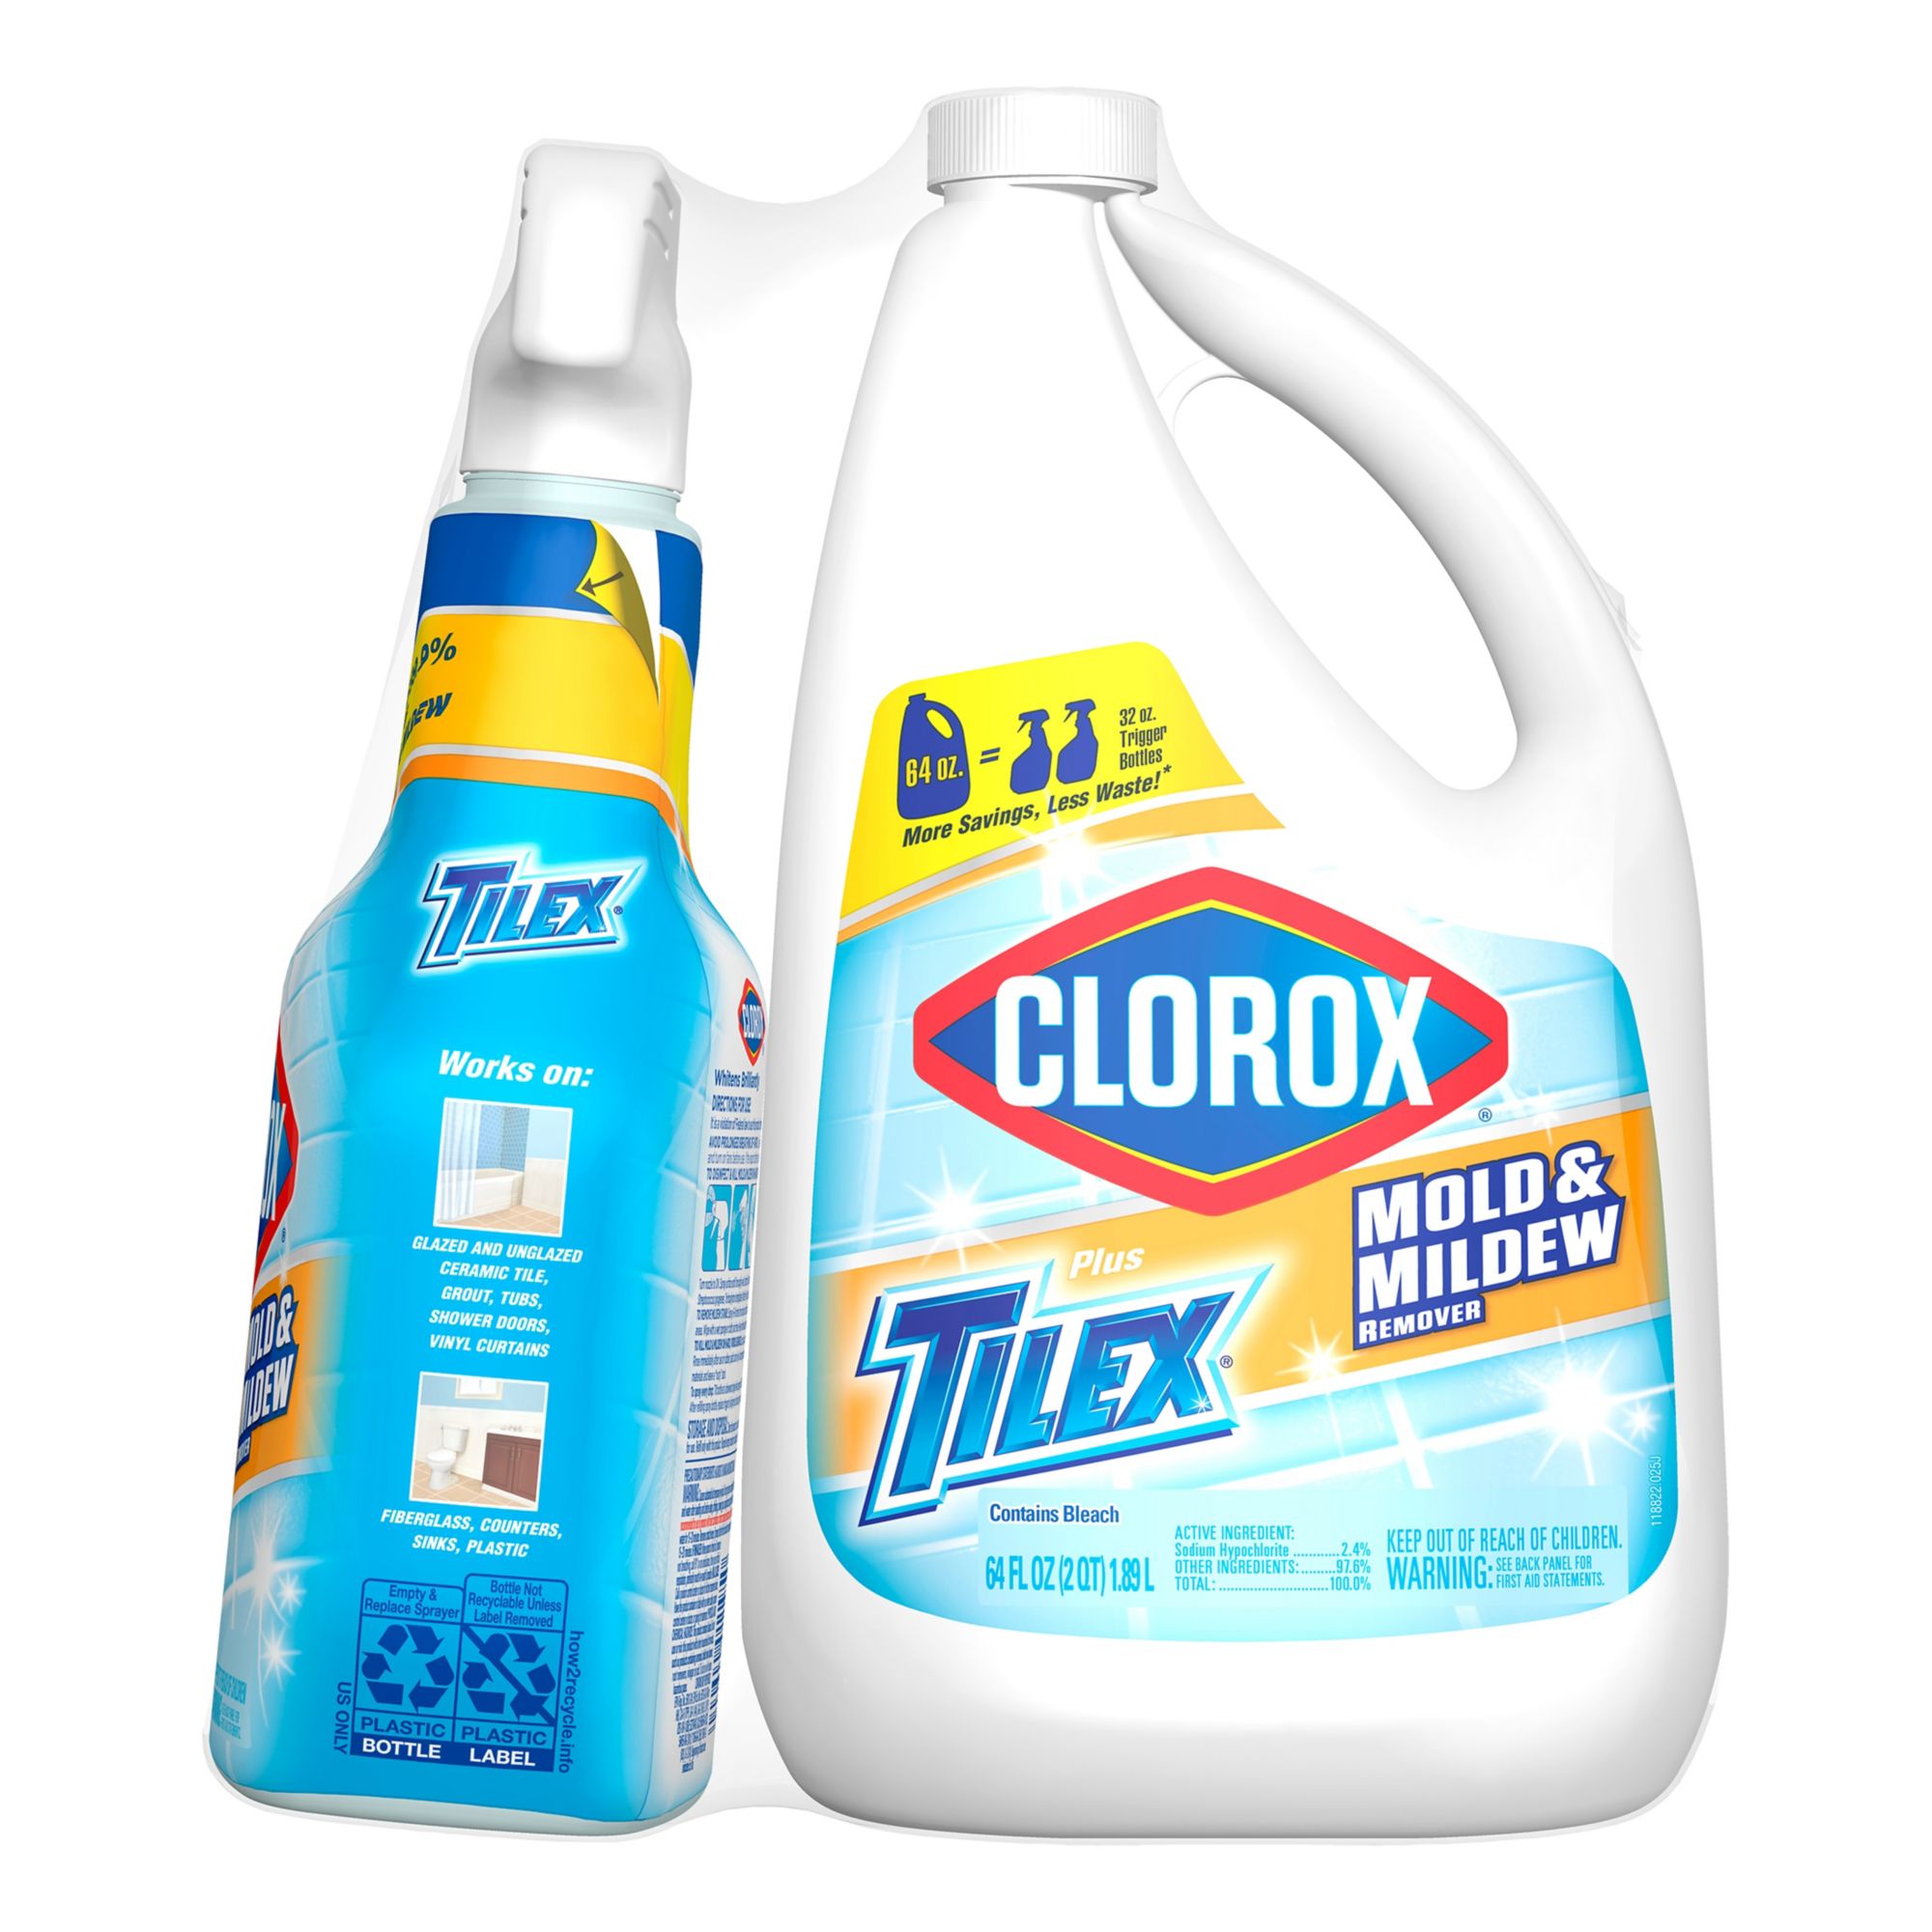 Tilex 32 OZ Fresh Shower Daily Shower Cleaner